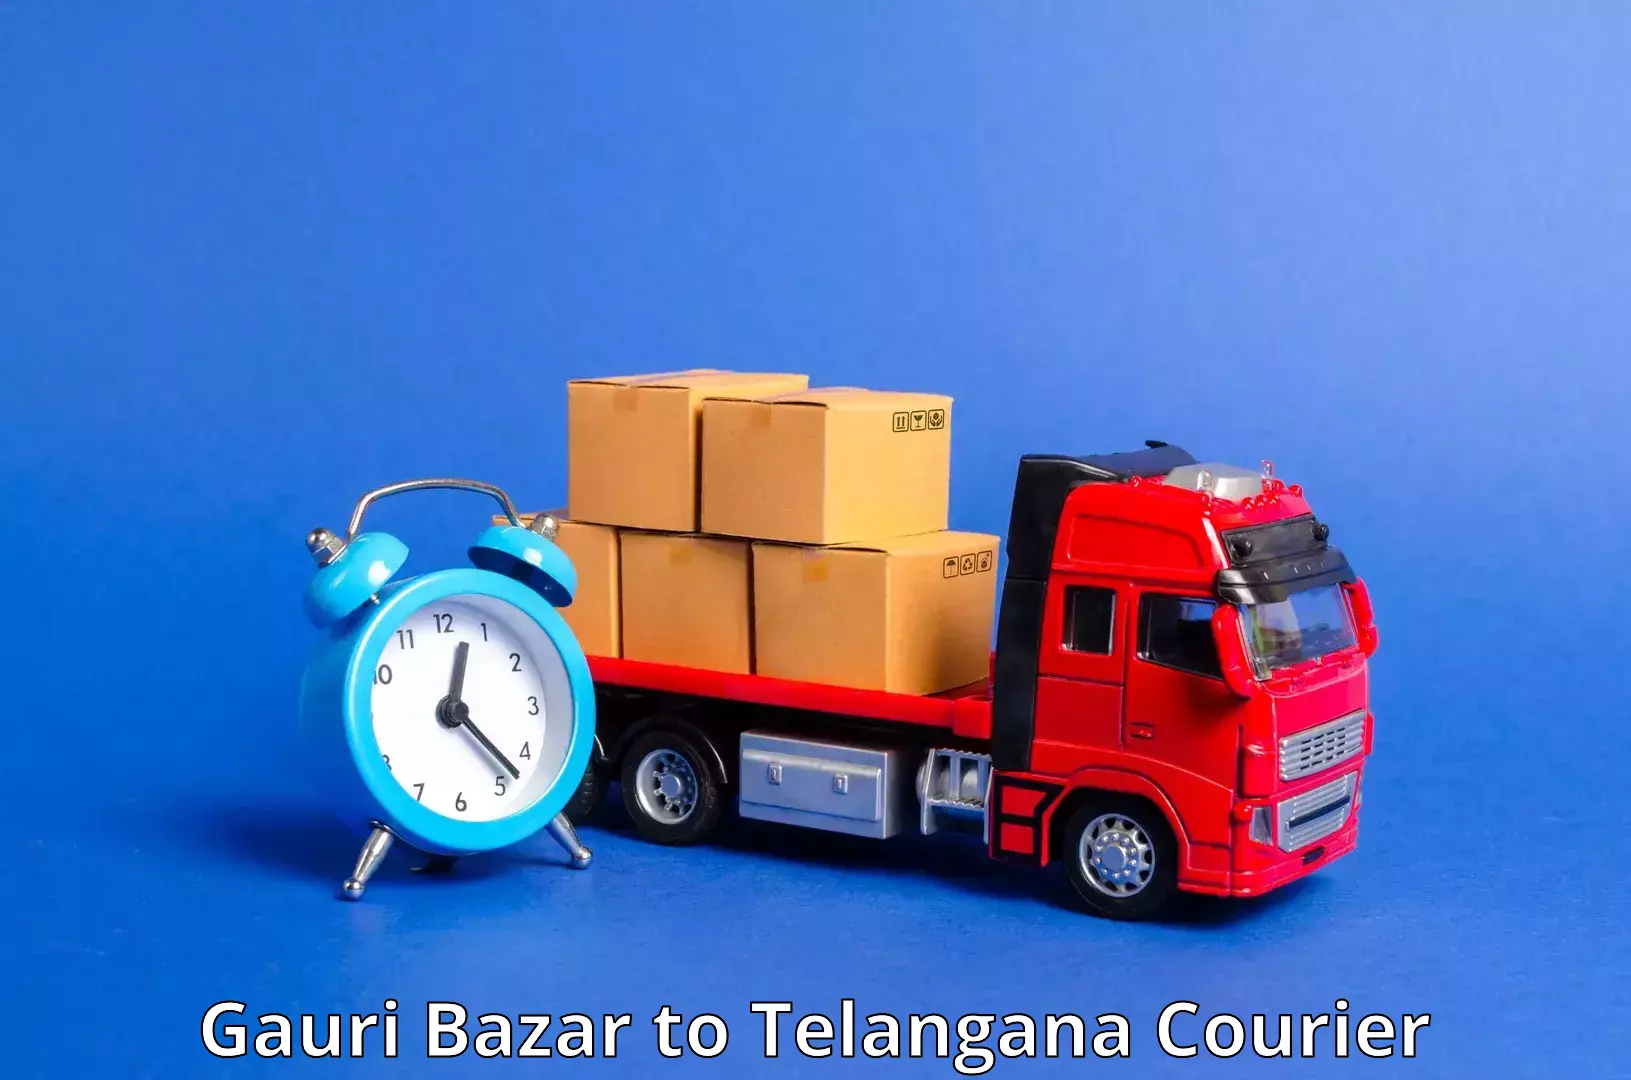 Global freight services Gauri Bazar to Achampet